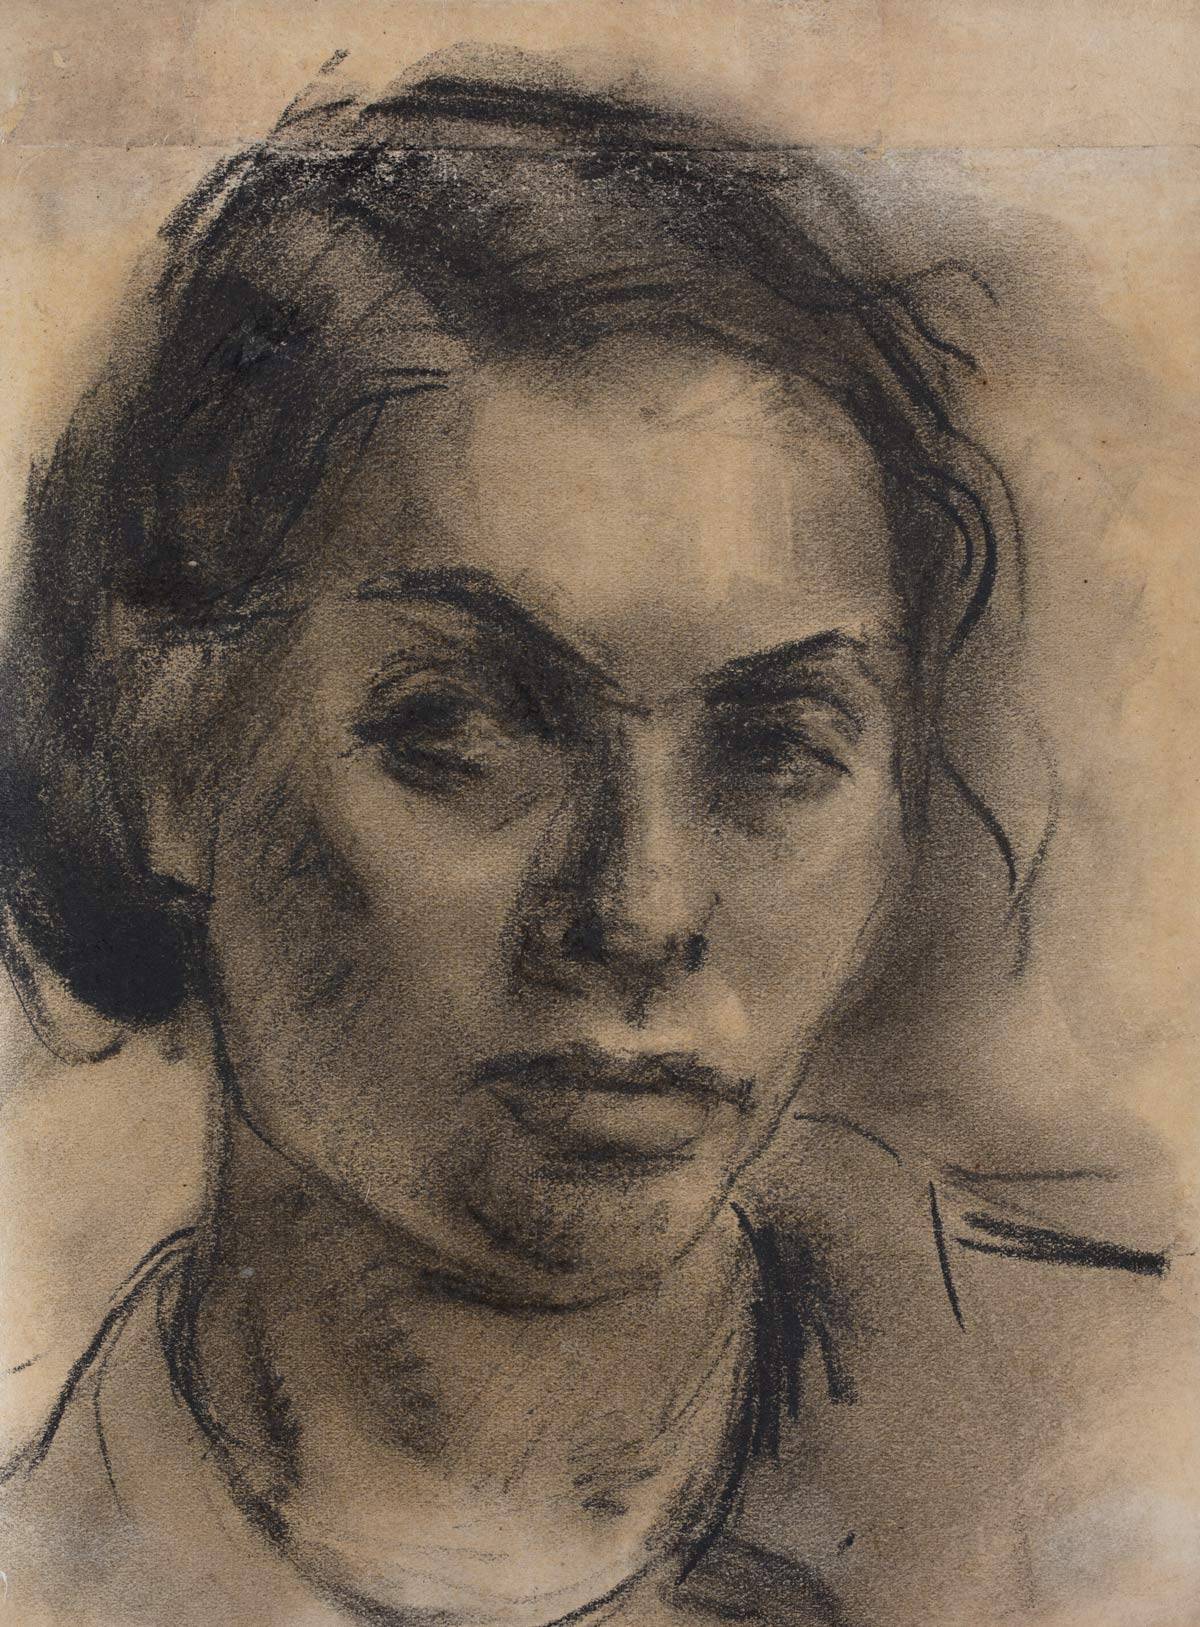 Gela Seksztajn, Autoportret (ze zbiorów Żydowskiego Instytutu Historycznego im. Emanuela Ringelbluma)